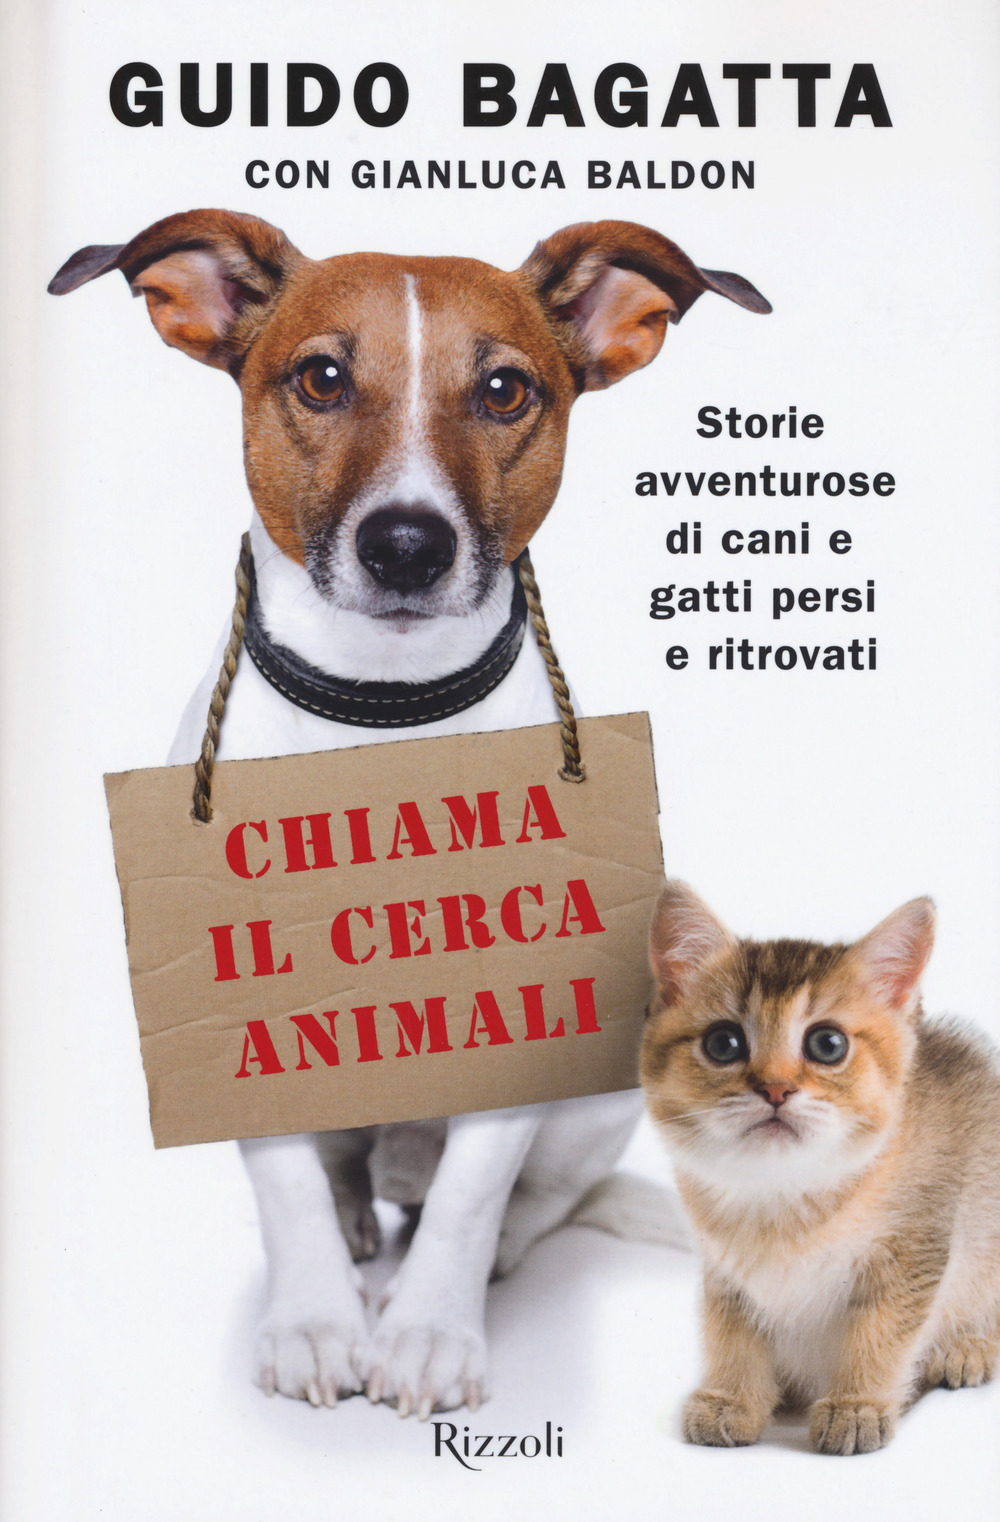 Image of Chiama il cerca animali. Storie avventurose di cani e gatti persi e ritrovati